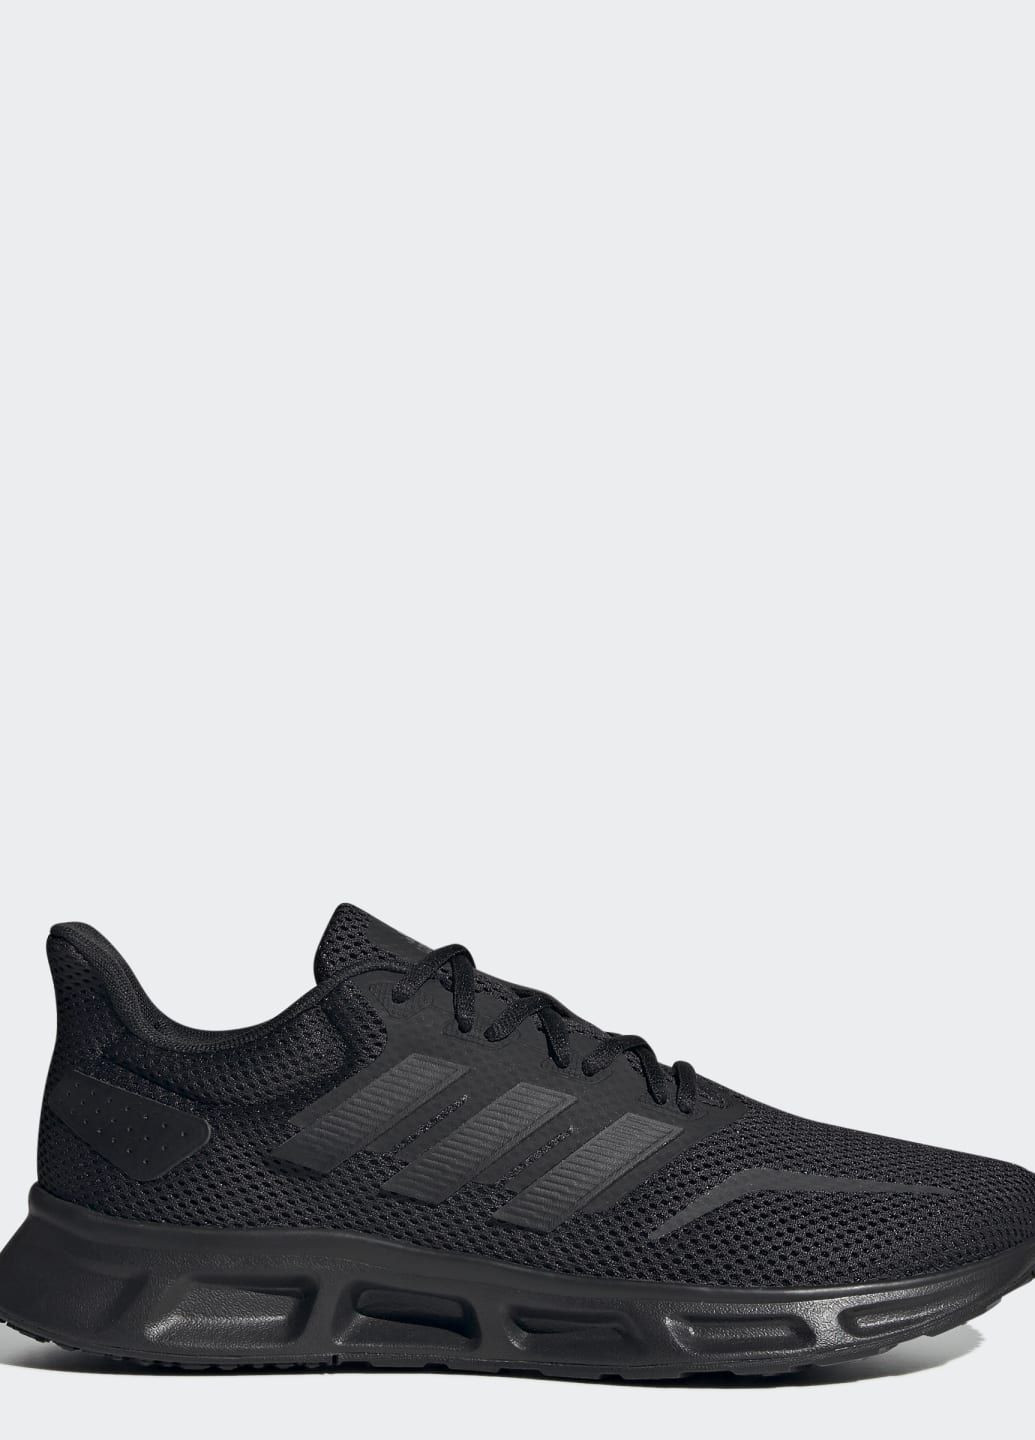 Черные всесезонные кроссовки showtheway 2.0 adidas